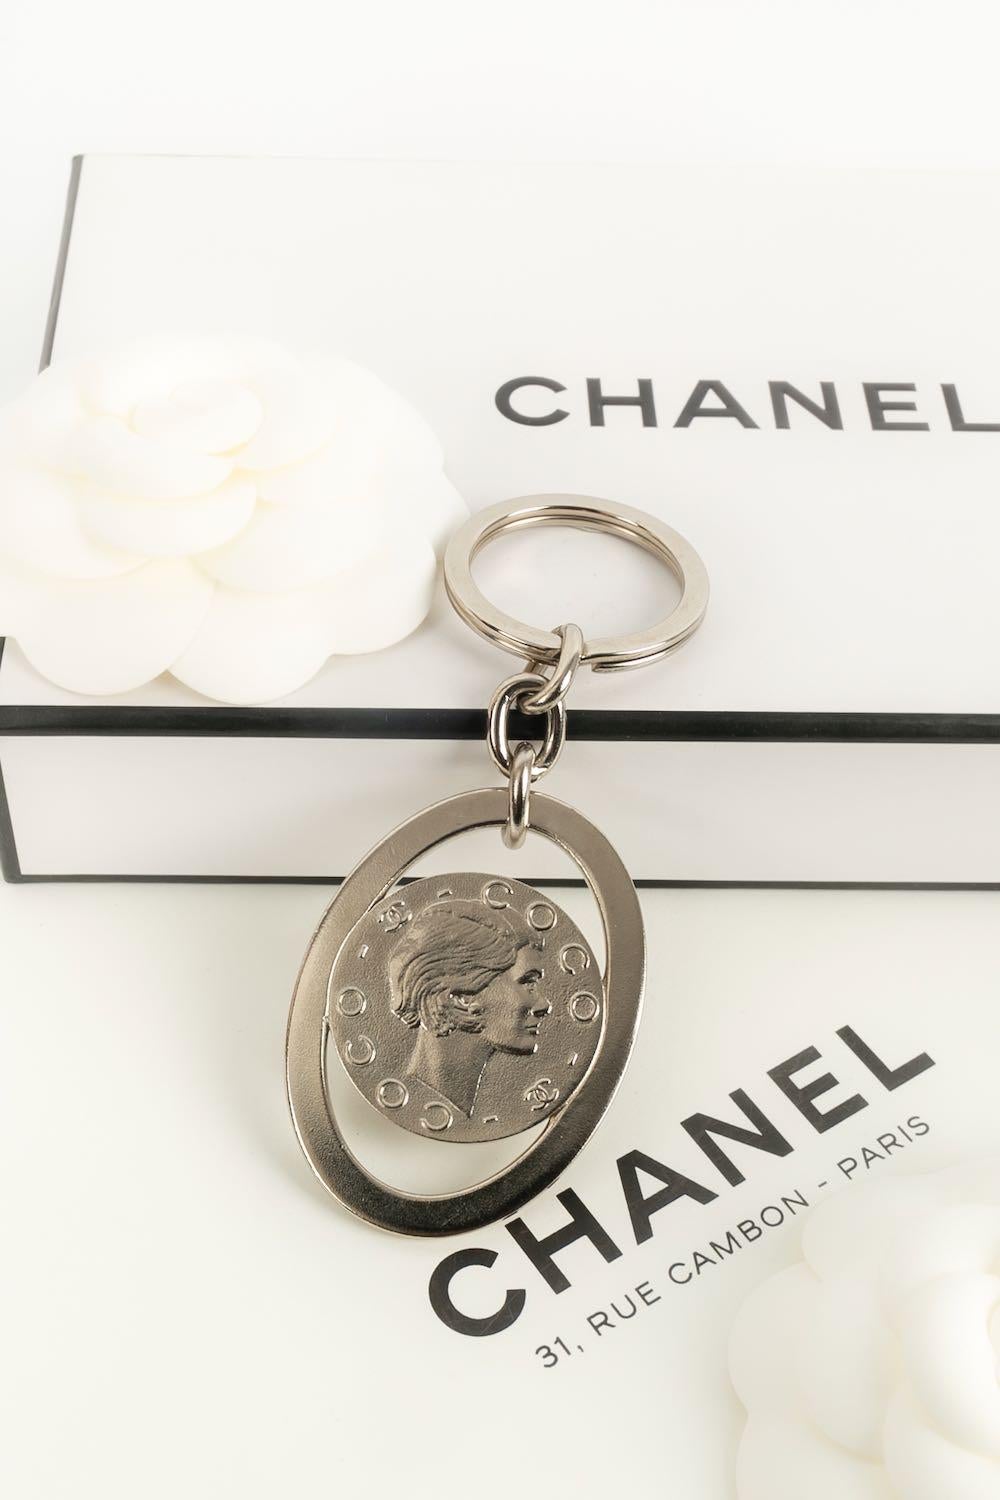 Chanel - Silberner Metall-Schlüsselanhänger

Zusätzliche Informationen: 

Abmessungen: 
Höhe: 10 cm

Bedingung: 
Sehr guter Zustand

Verkäufer Ref Nummer: BRB11